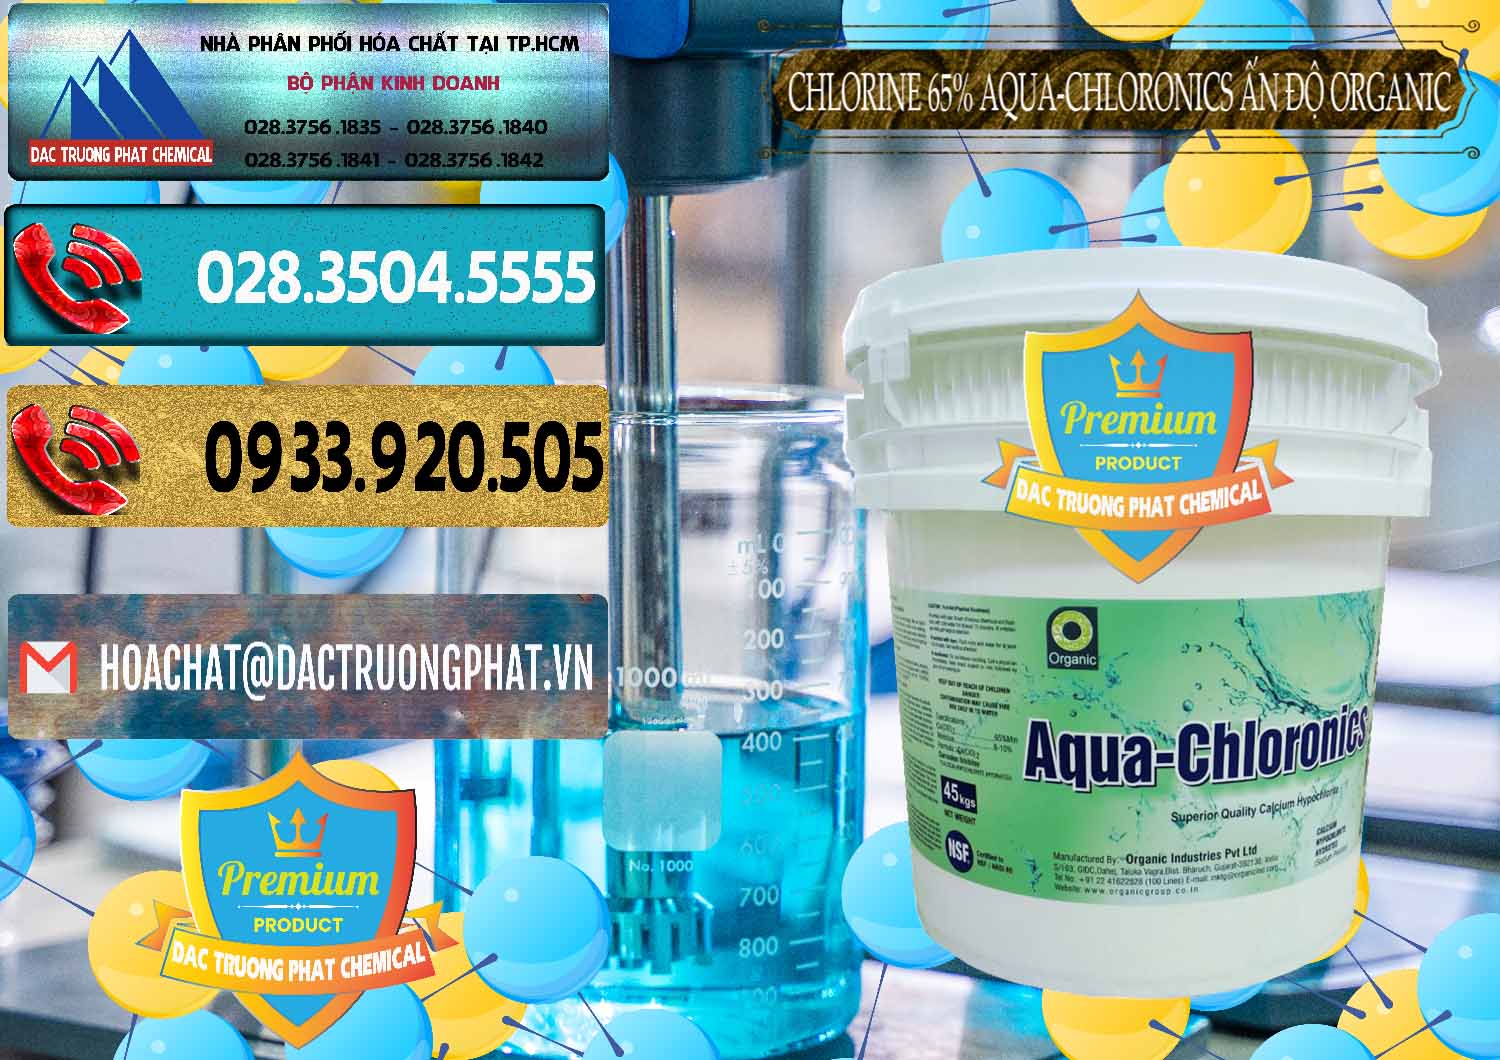 Cty bán - phân phối Chlorine – Clorin 65% Aqua-Chloronics Ấn Độ Organic India - 0210 - Cty cung cấp - bán hóa chất tại TP.HCM - hoachatdetnhuom.com